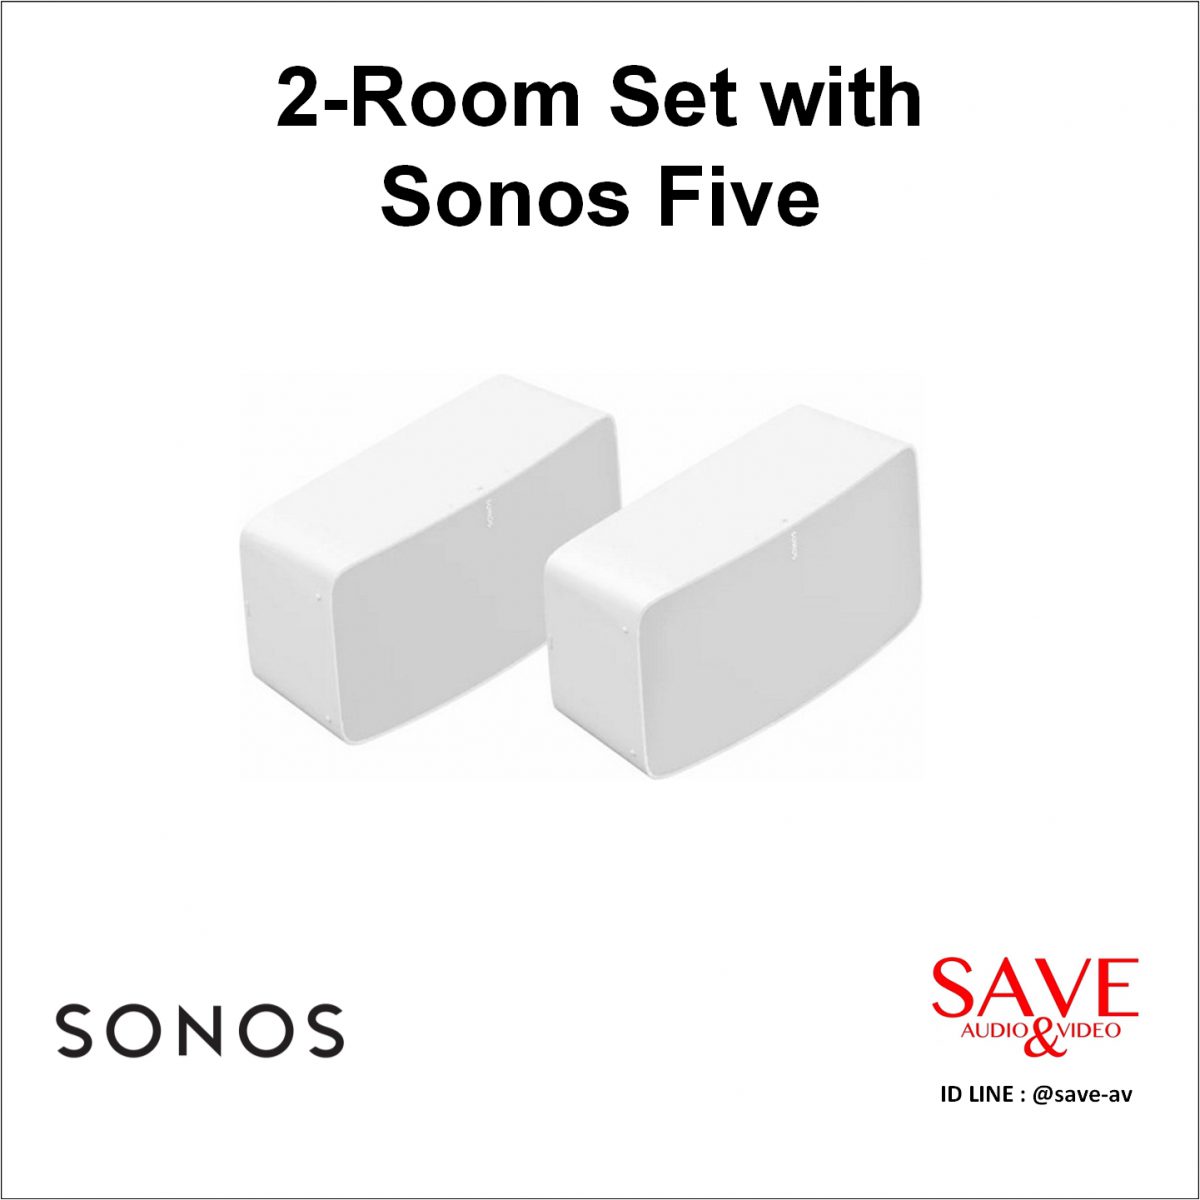 Sonos Thailand 2-Room Set with Sonos Five